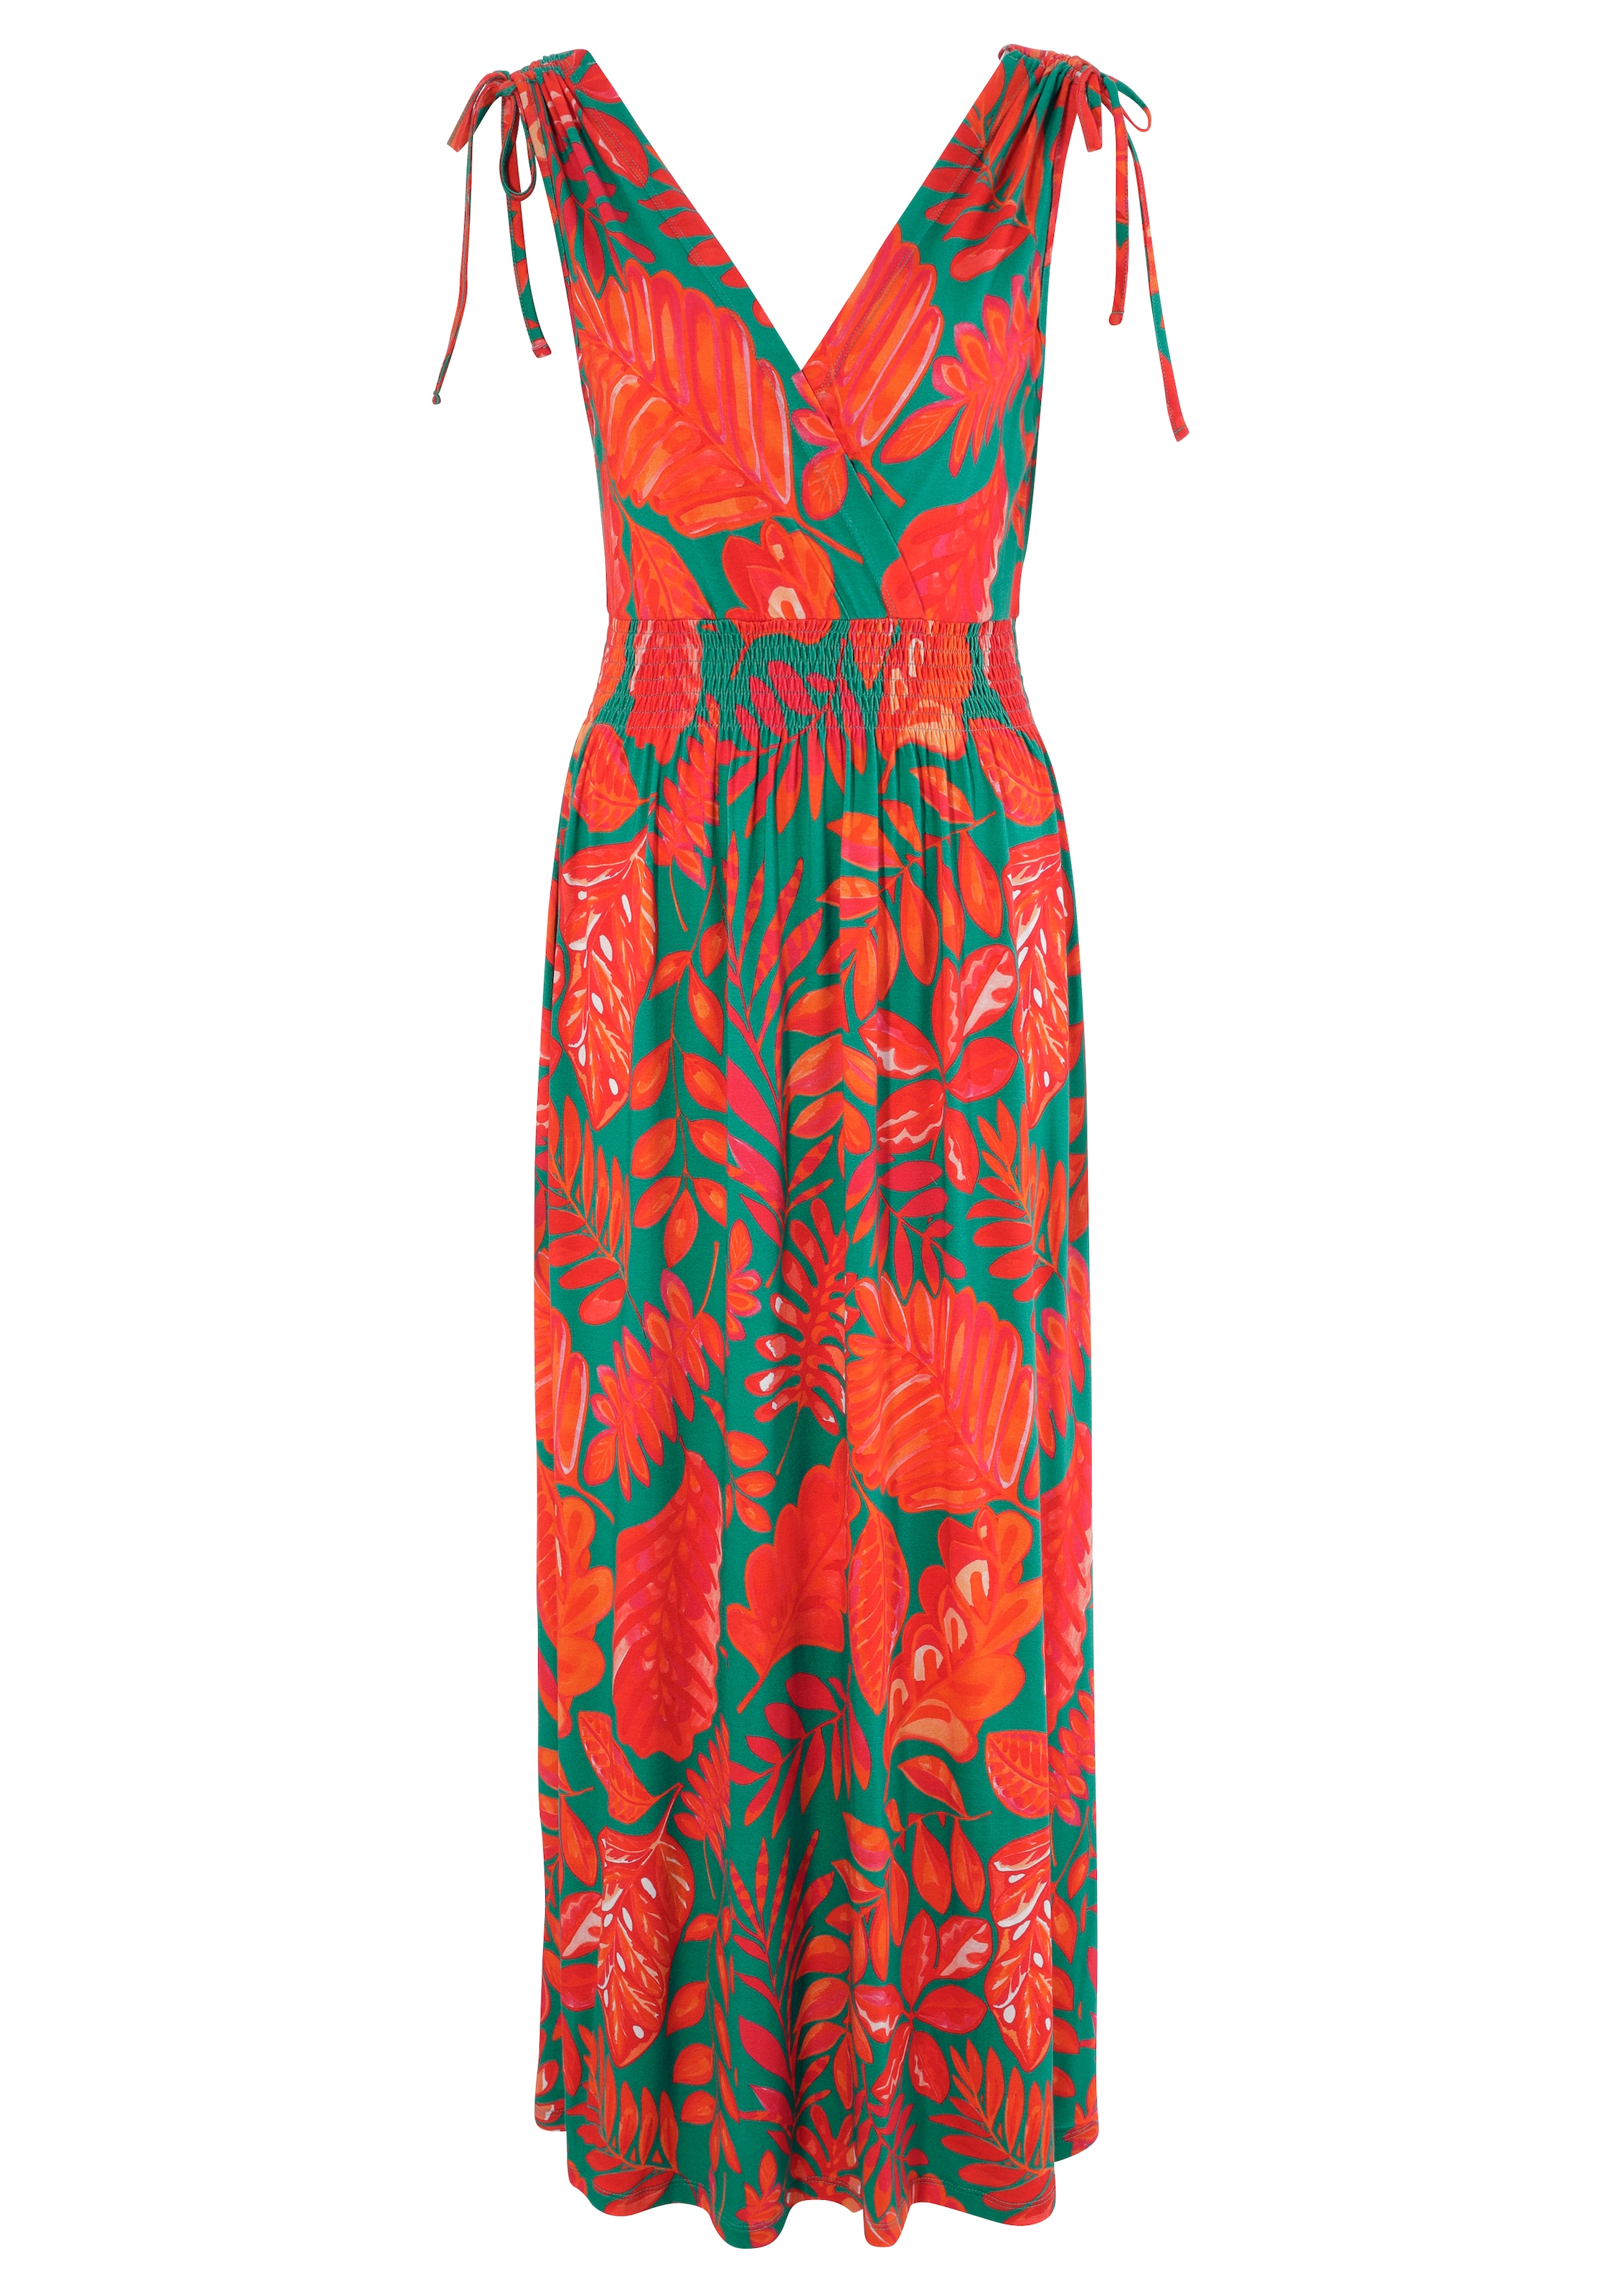 SELECTED Aniston Raffen online zum Trägern mit Sommerkleid, breiten